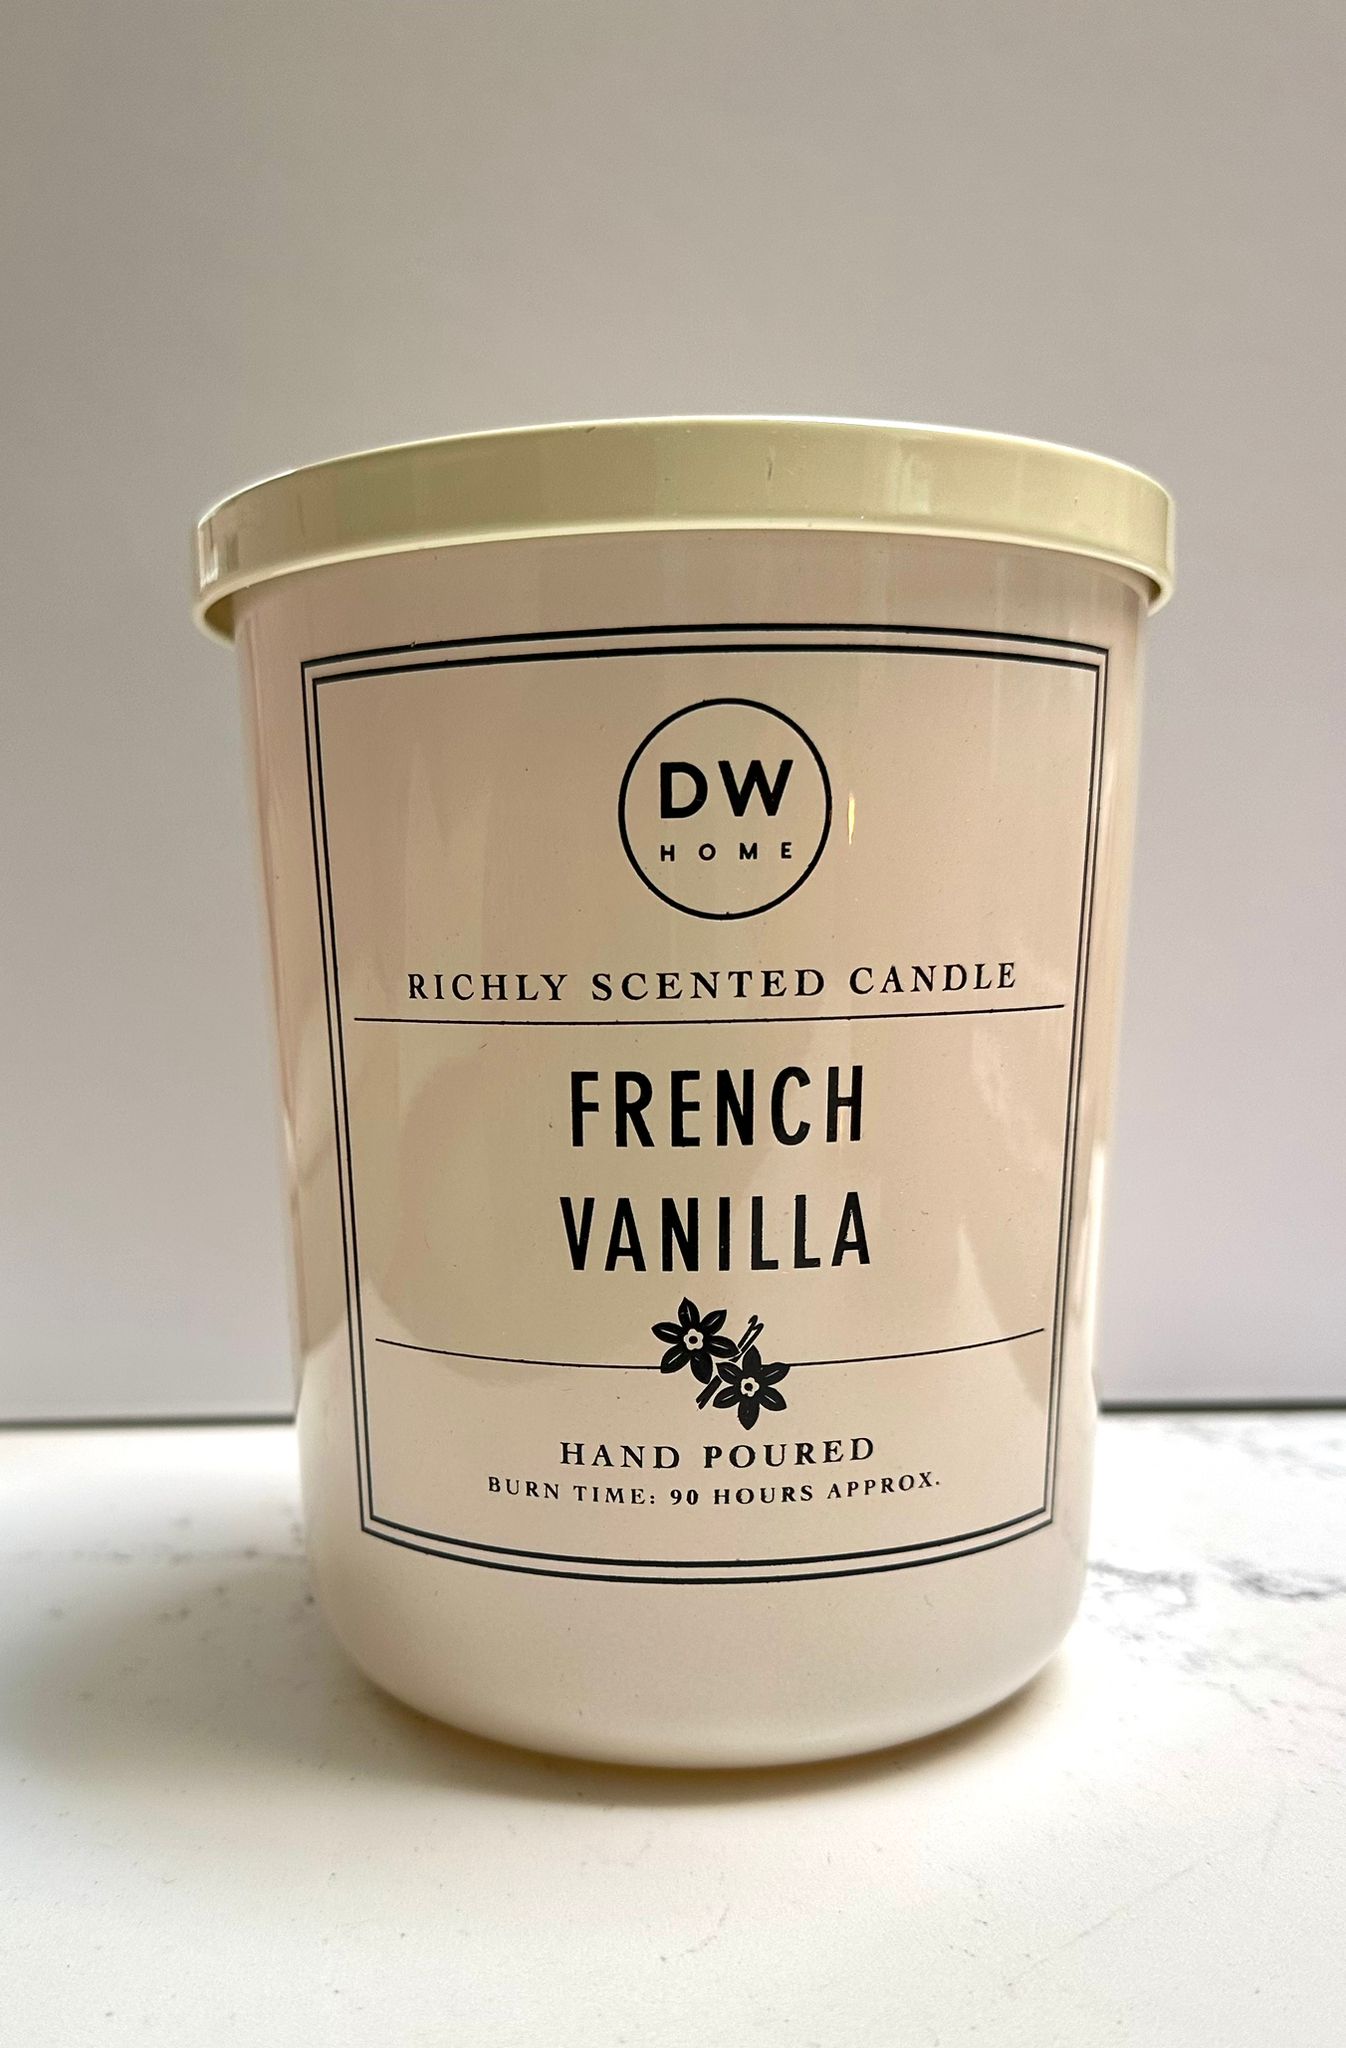 נר ריחני - French Vanilla